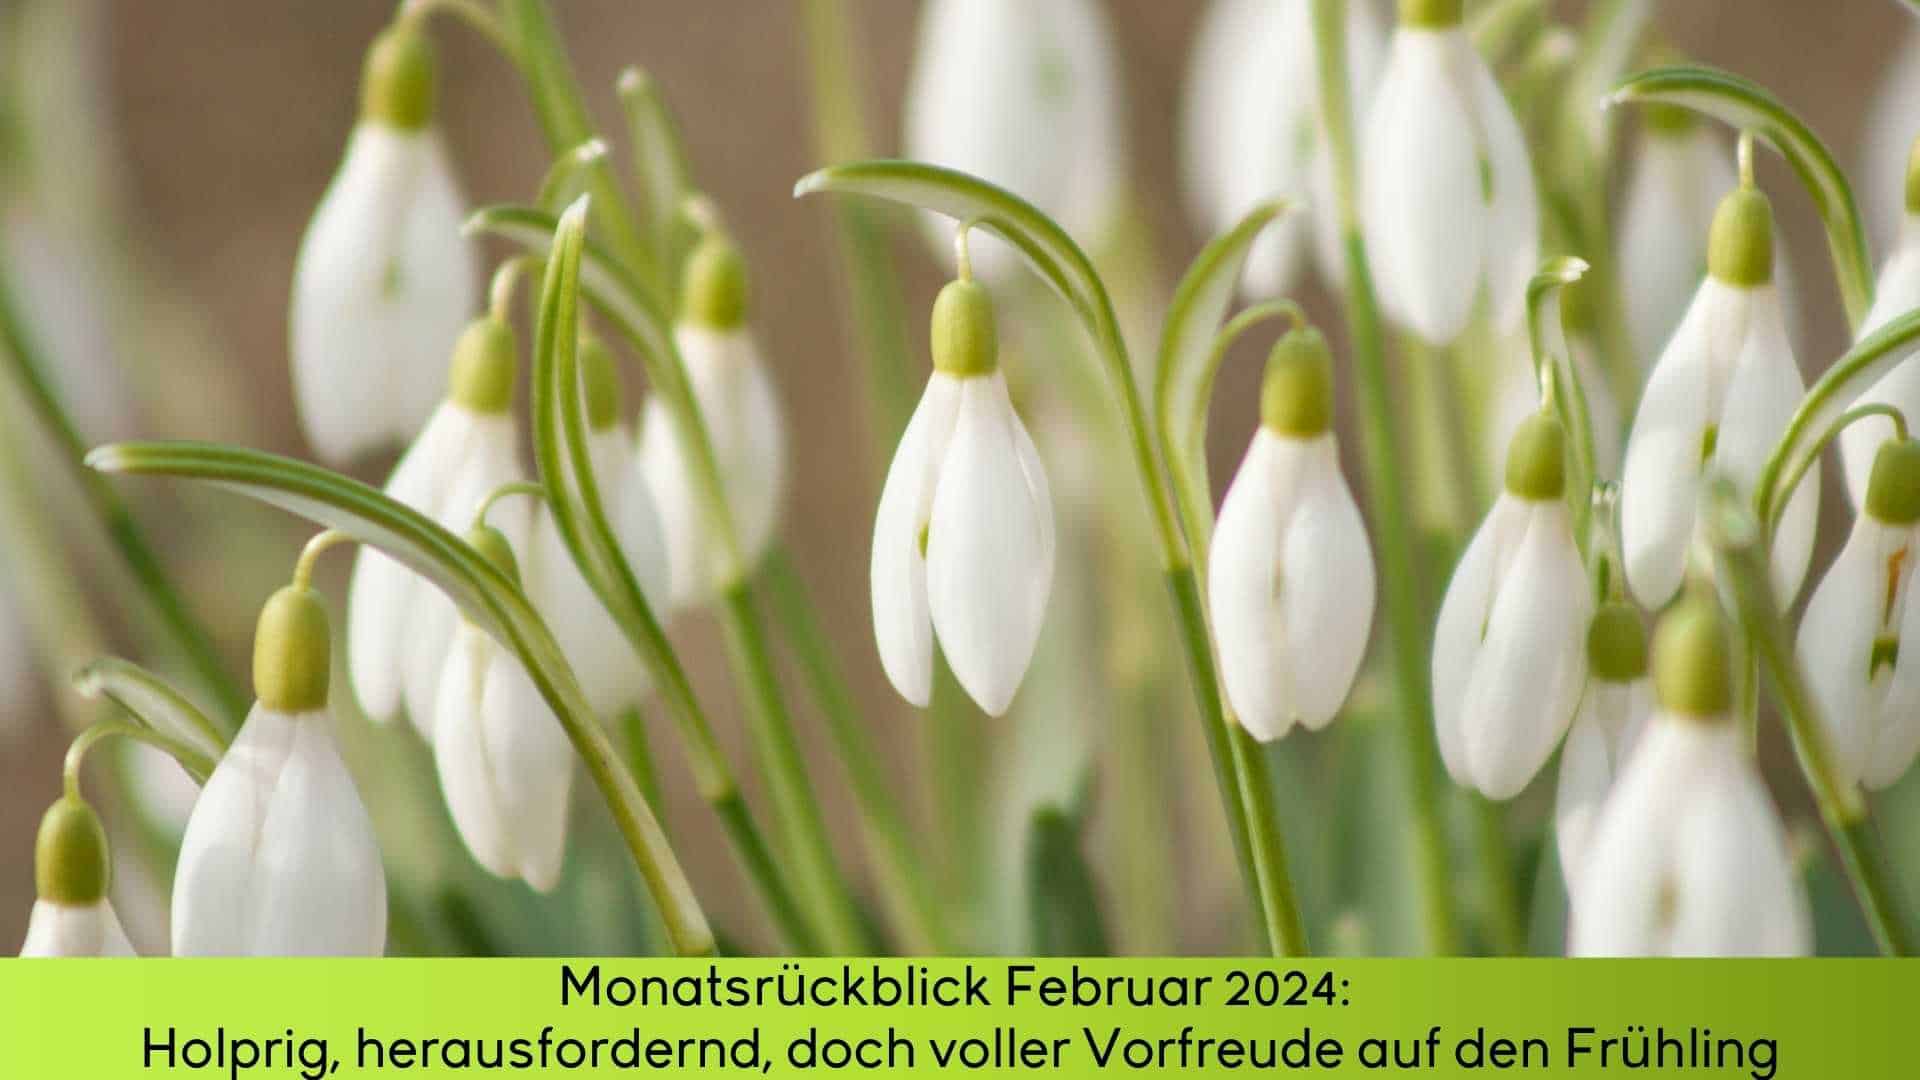 Monatsrückblick Februar 2024 lässt hoffen, denn der Frühling steht vor der Tür. Hier Schneeglöckchen im Bauerngarten